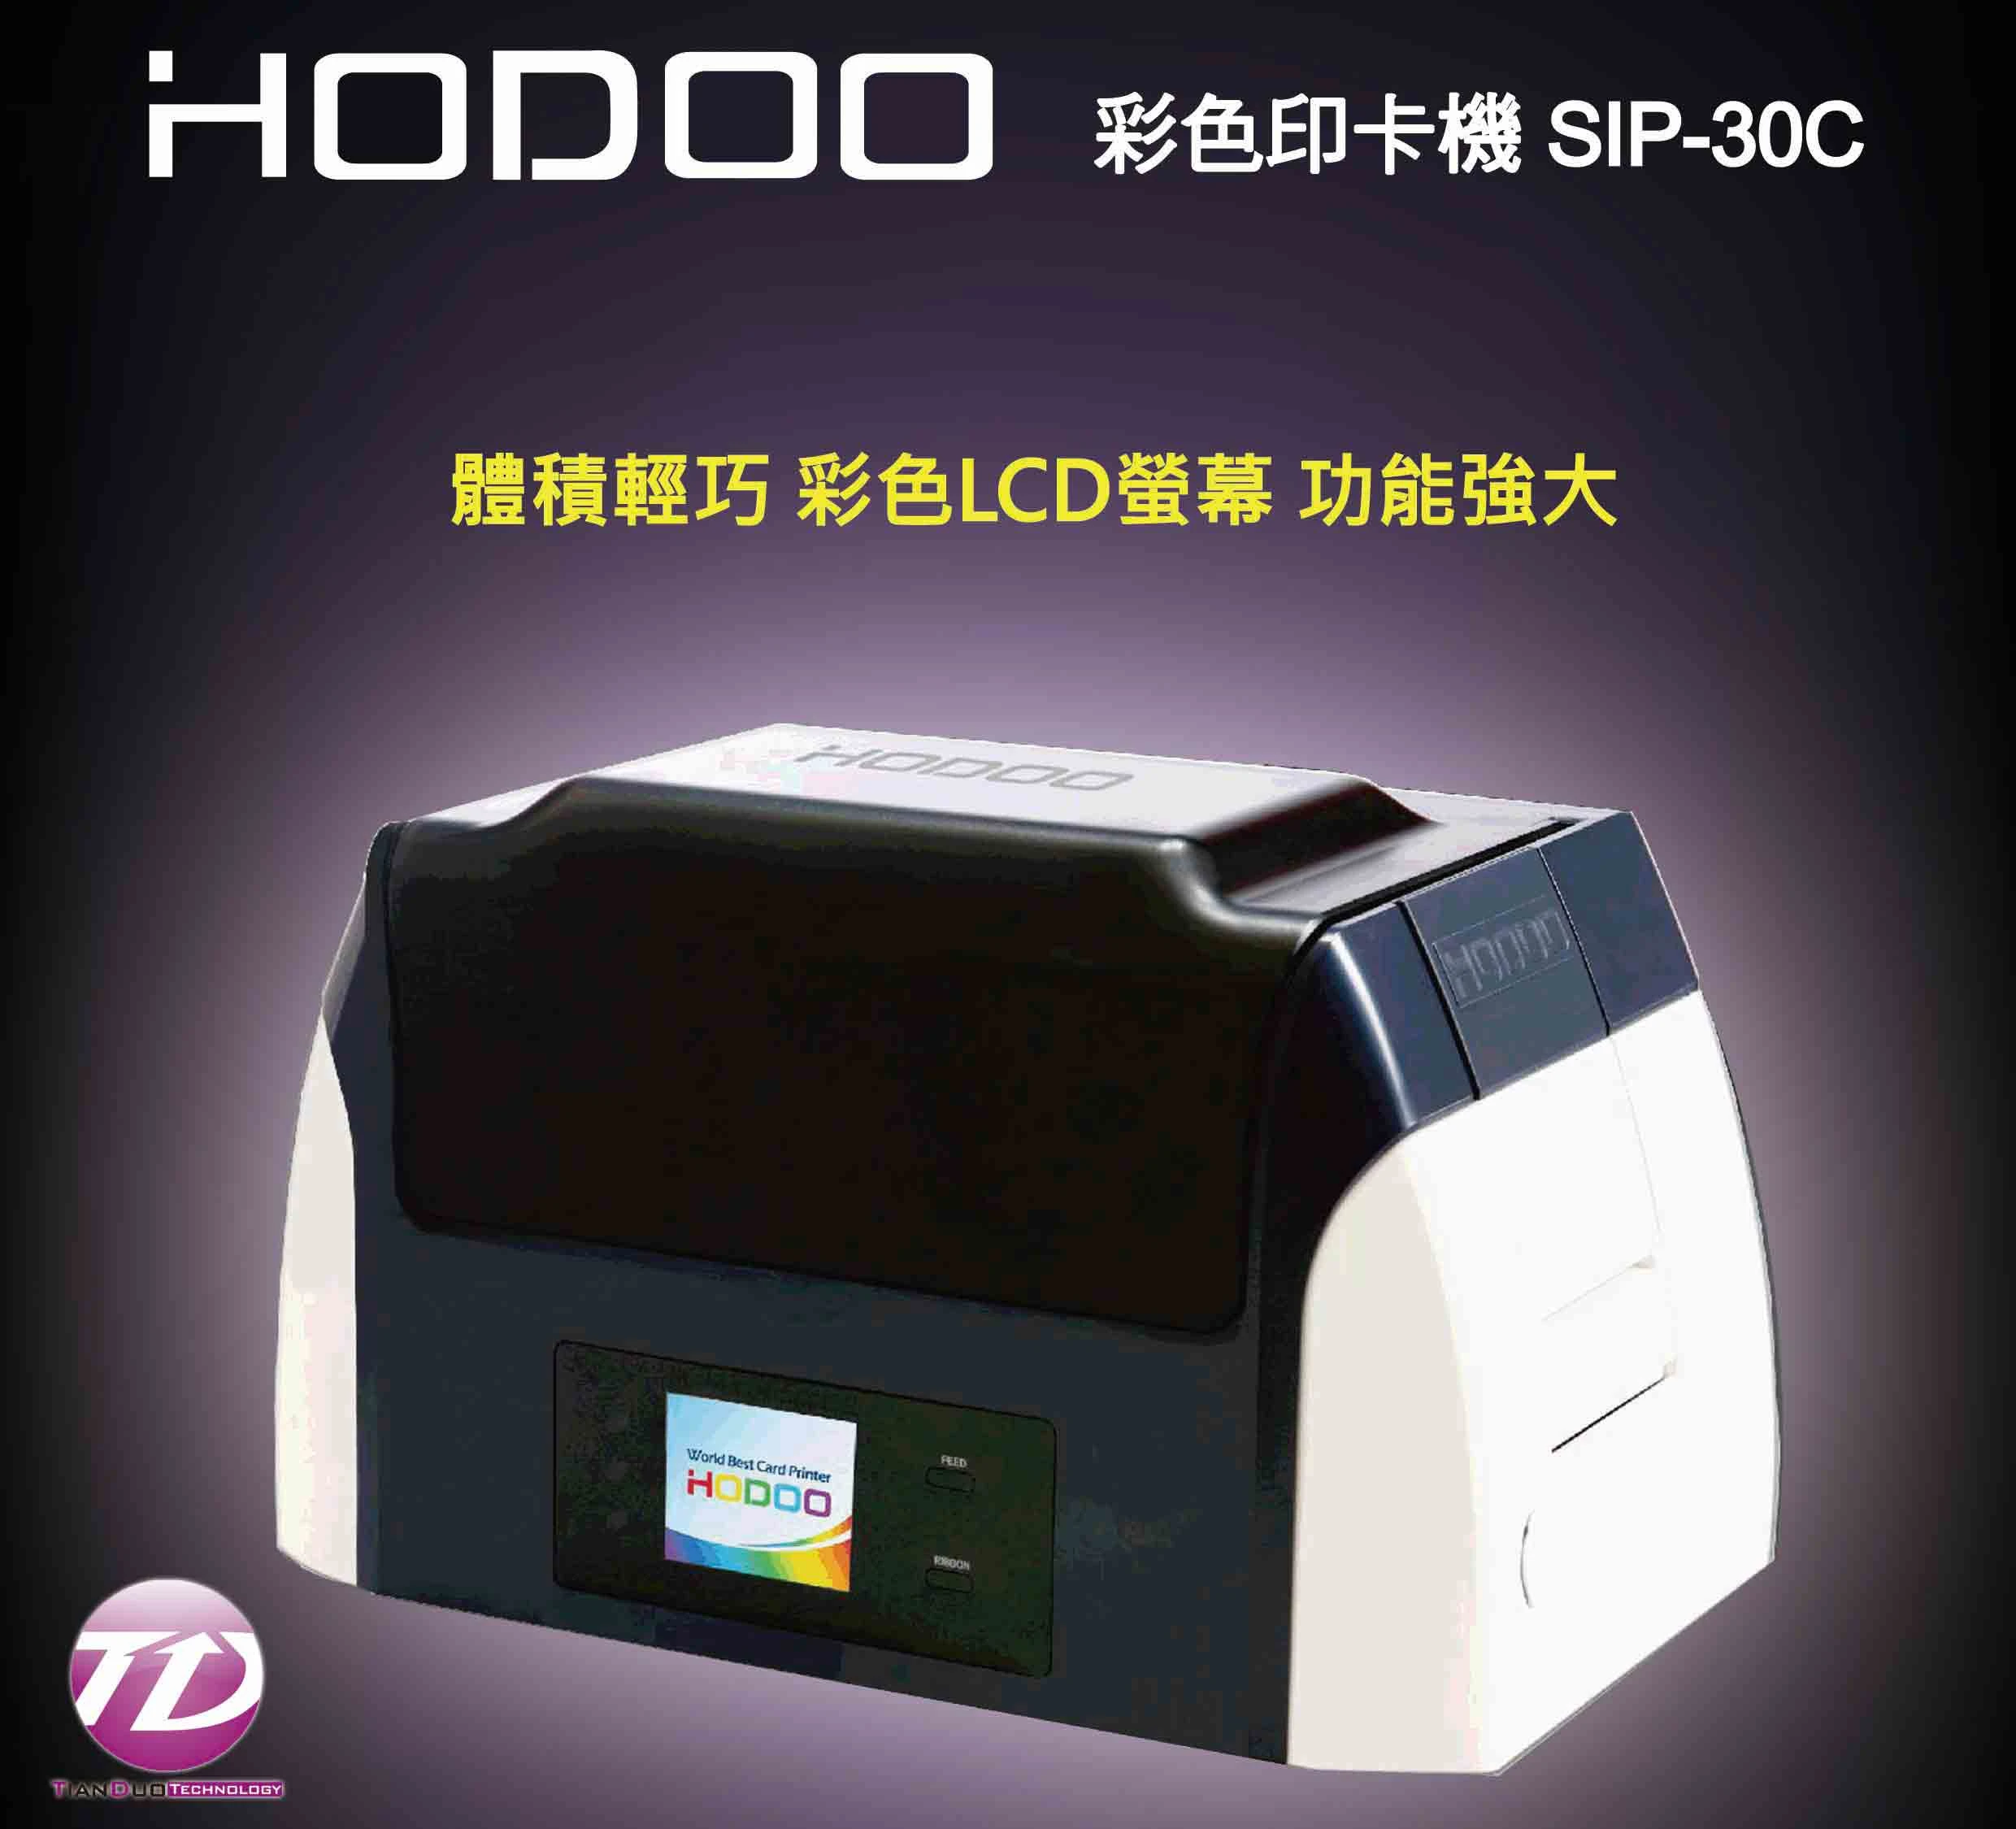 HODOO SIP-30C 韓國彩色單面印卡機